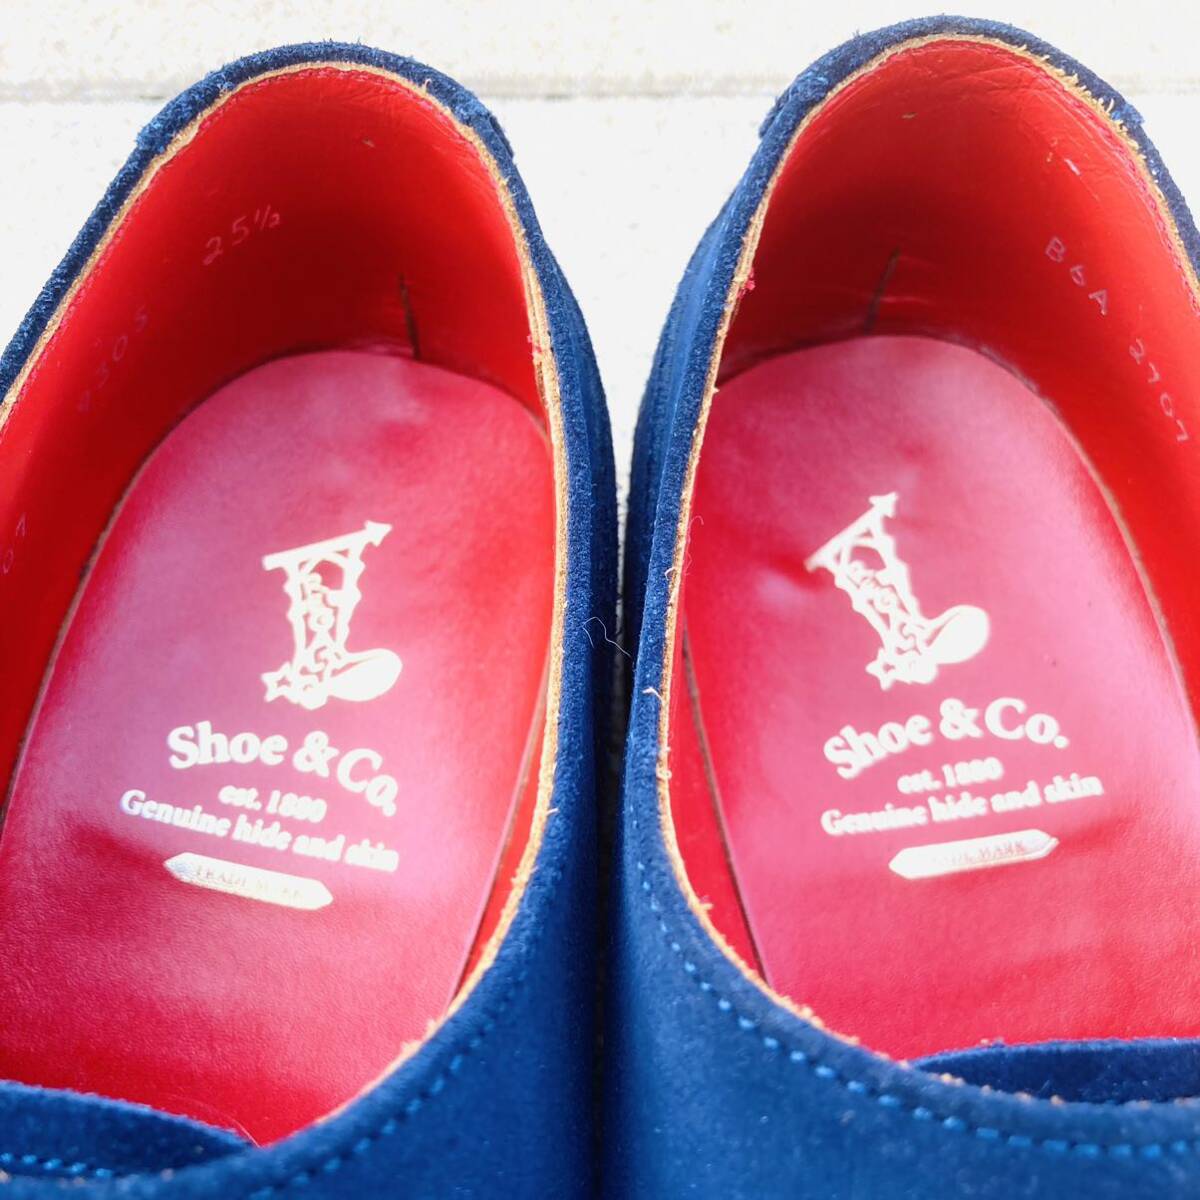 ★最上位ライン★ REGAL Shoe&Co. リーガル 25.5cm 革靴 ダブルモンク スエード 日本製 ネイビー ロイヤルブルー NV マリンテイスト_画像6